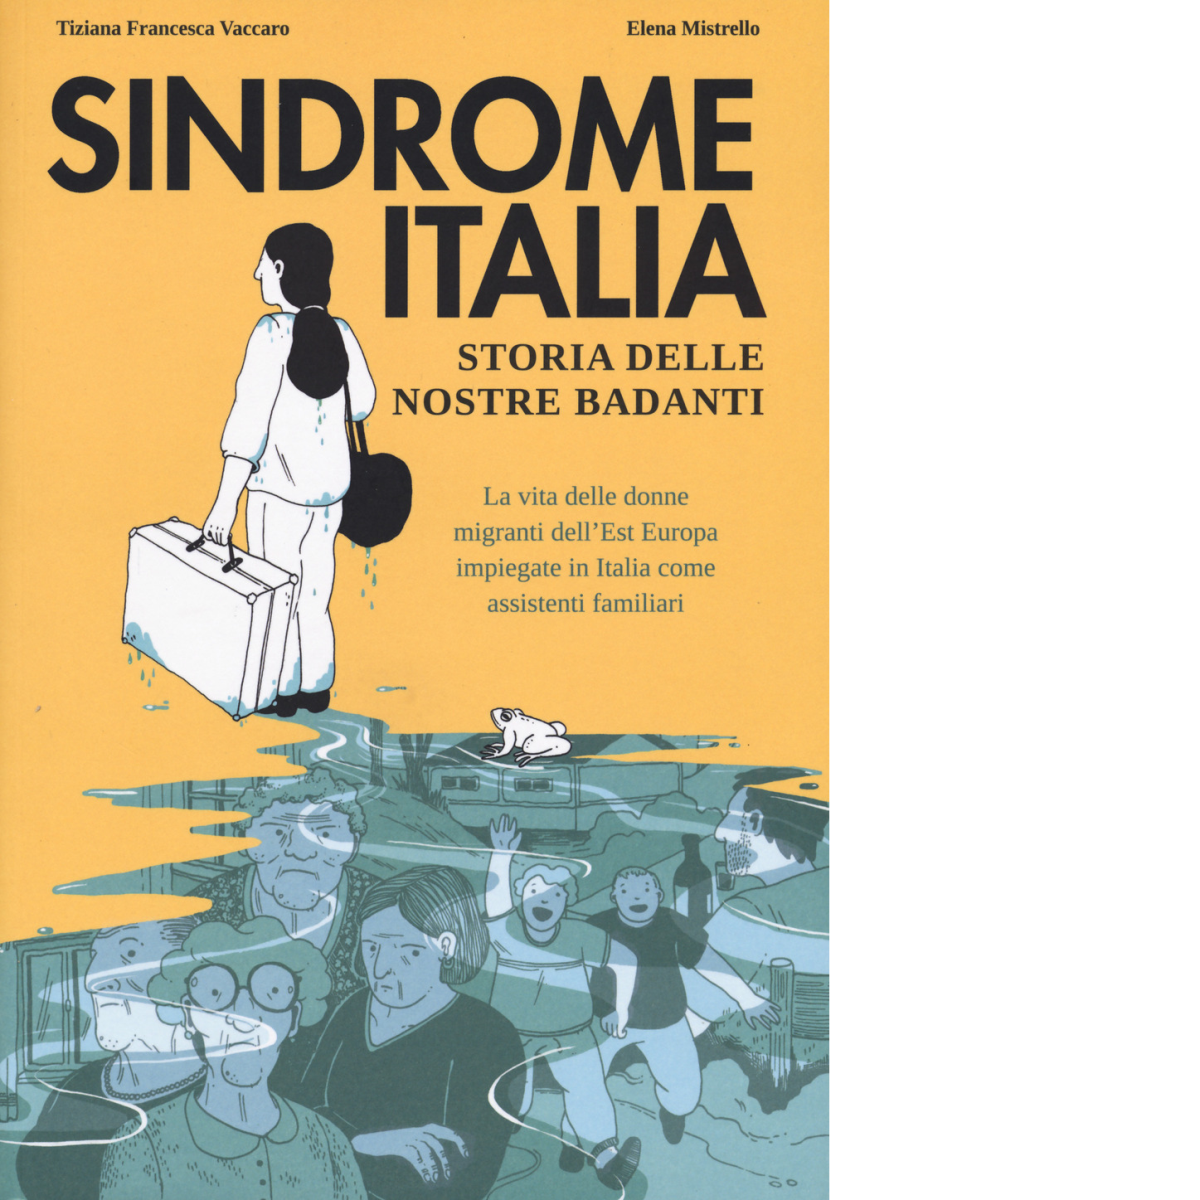 Sindrome Italia. Storia delle nostre badanti di Tiziana Francesca Vaccaro,  2021